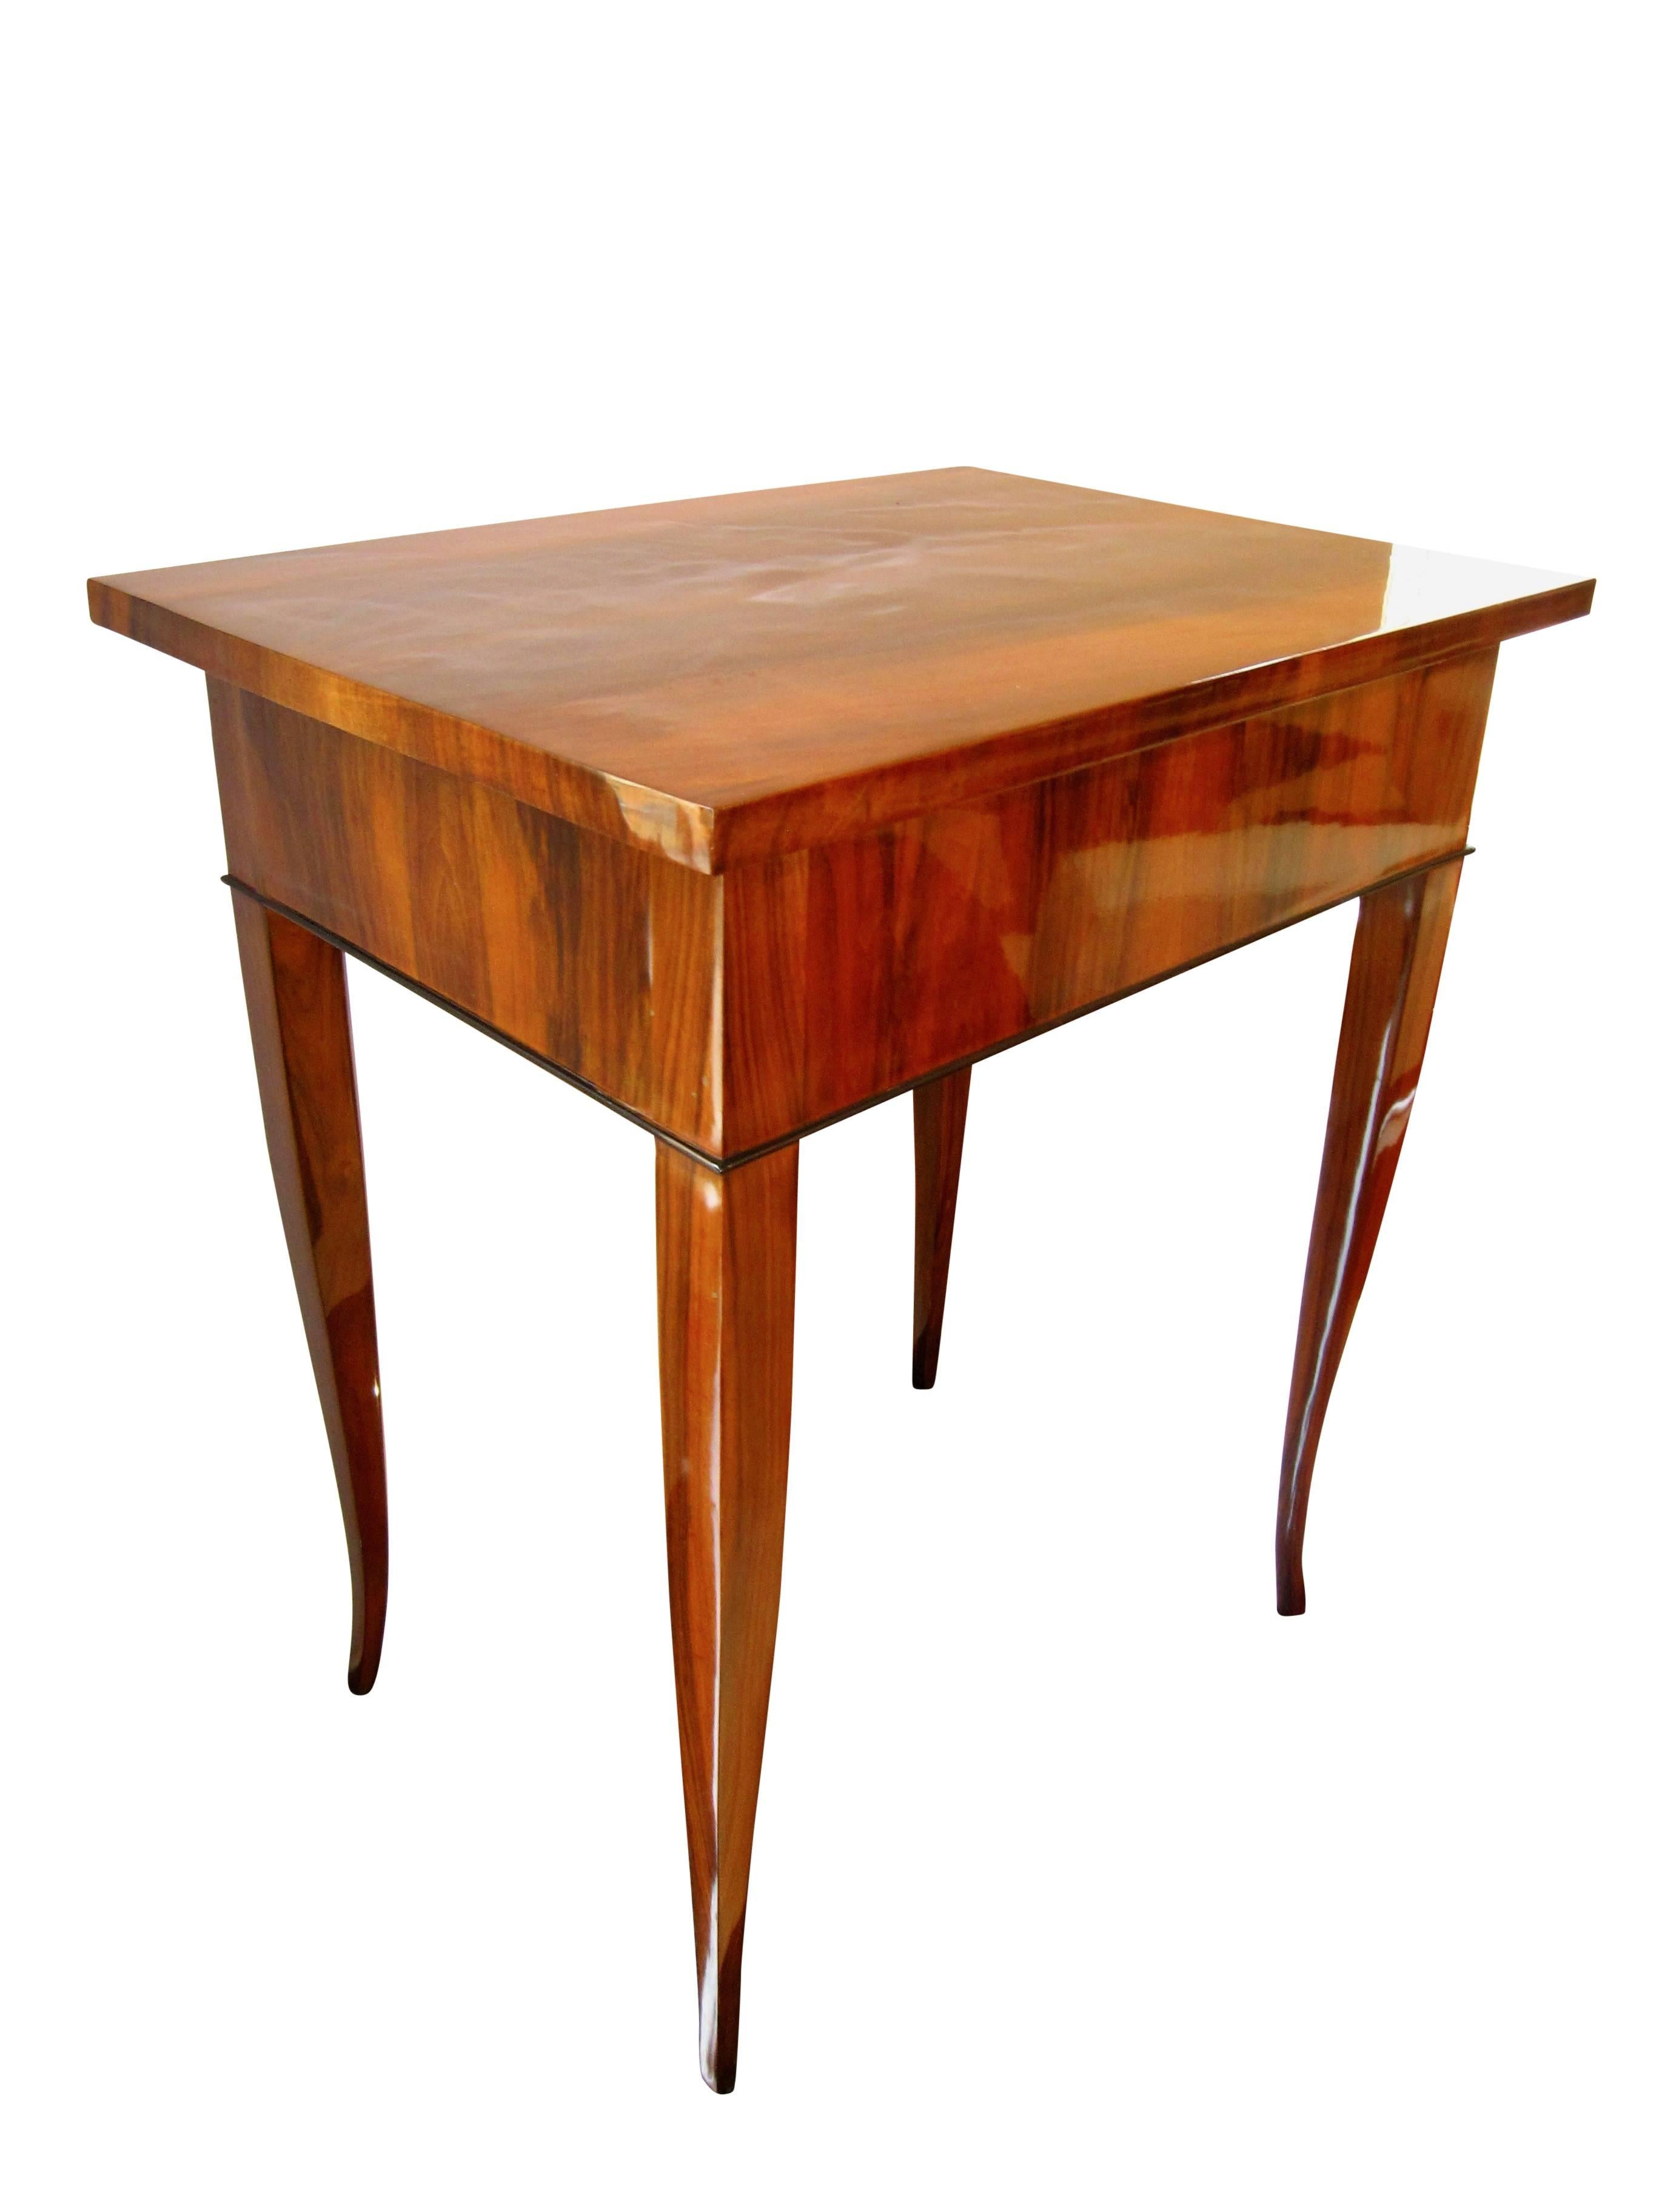 Simple, early Biedermeier side table with walnut veneer and elegance legs.